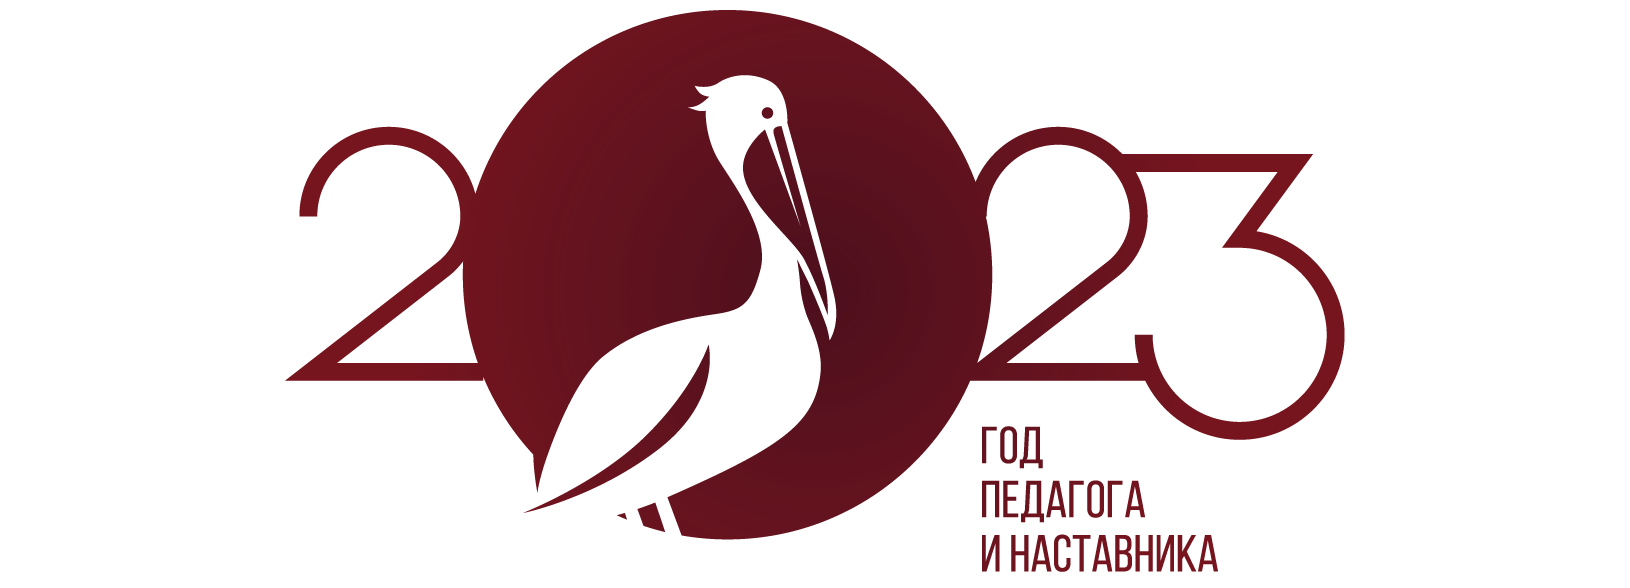 логотип года педагога и наставника